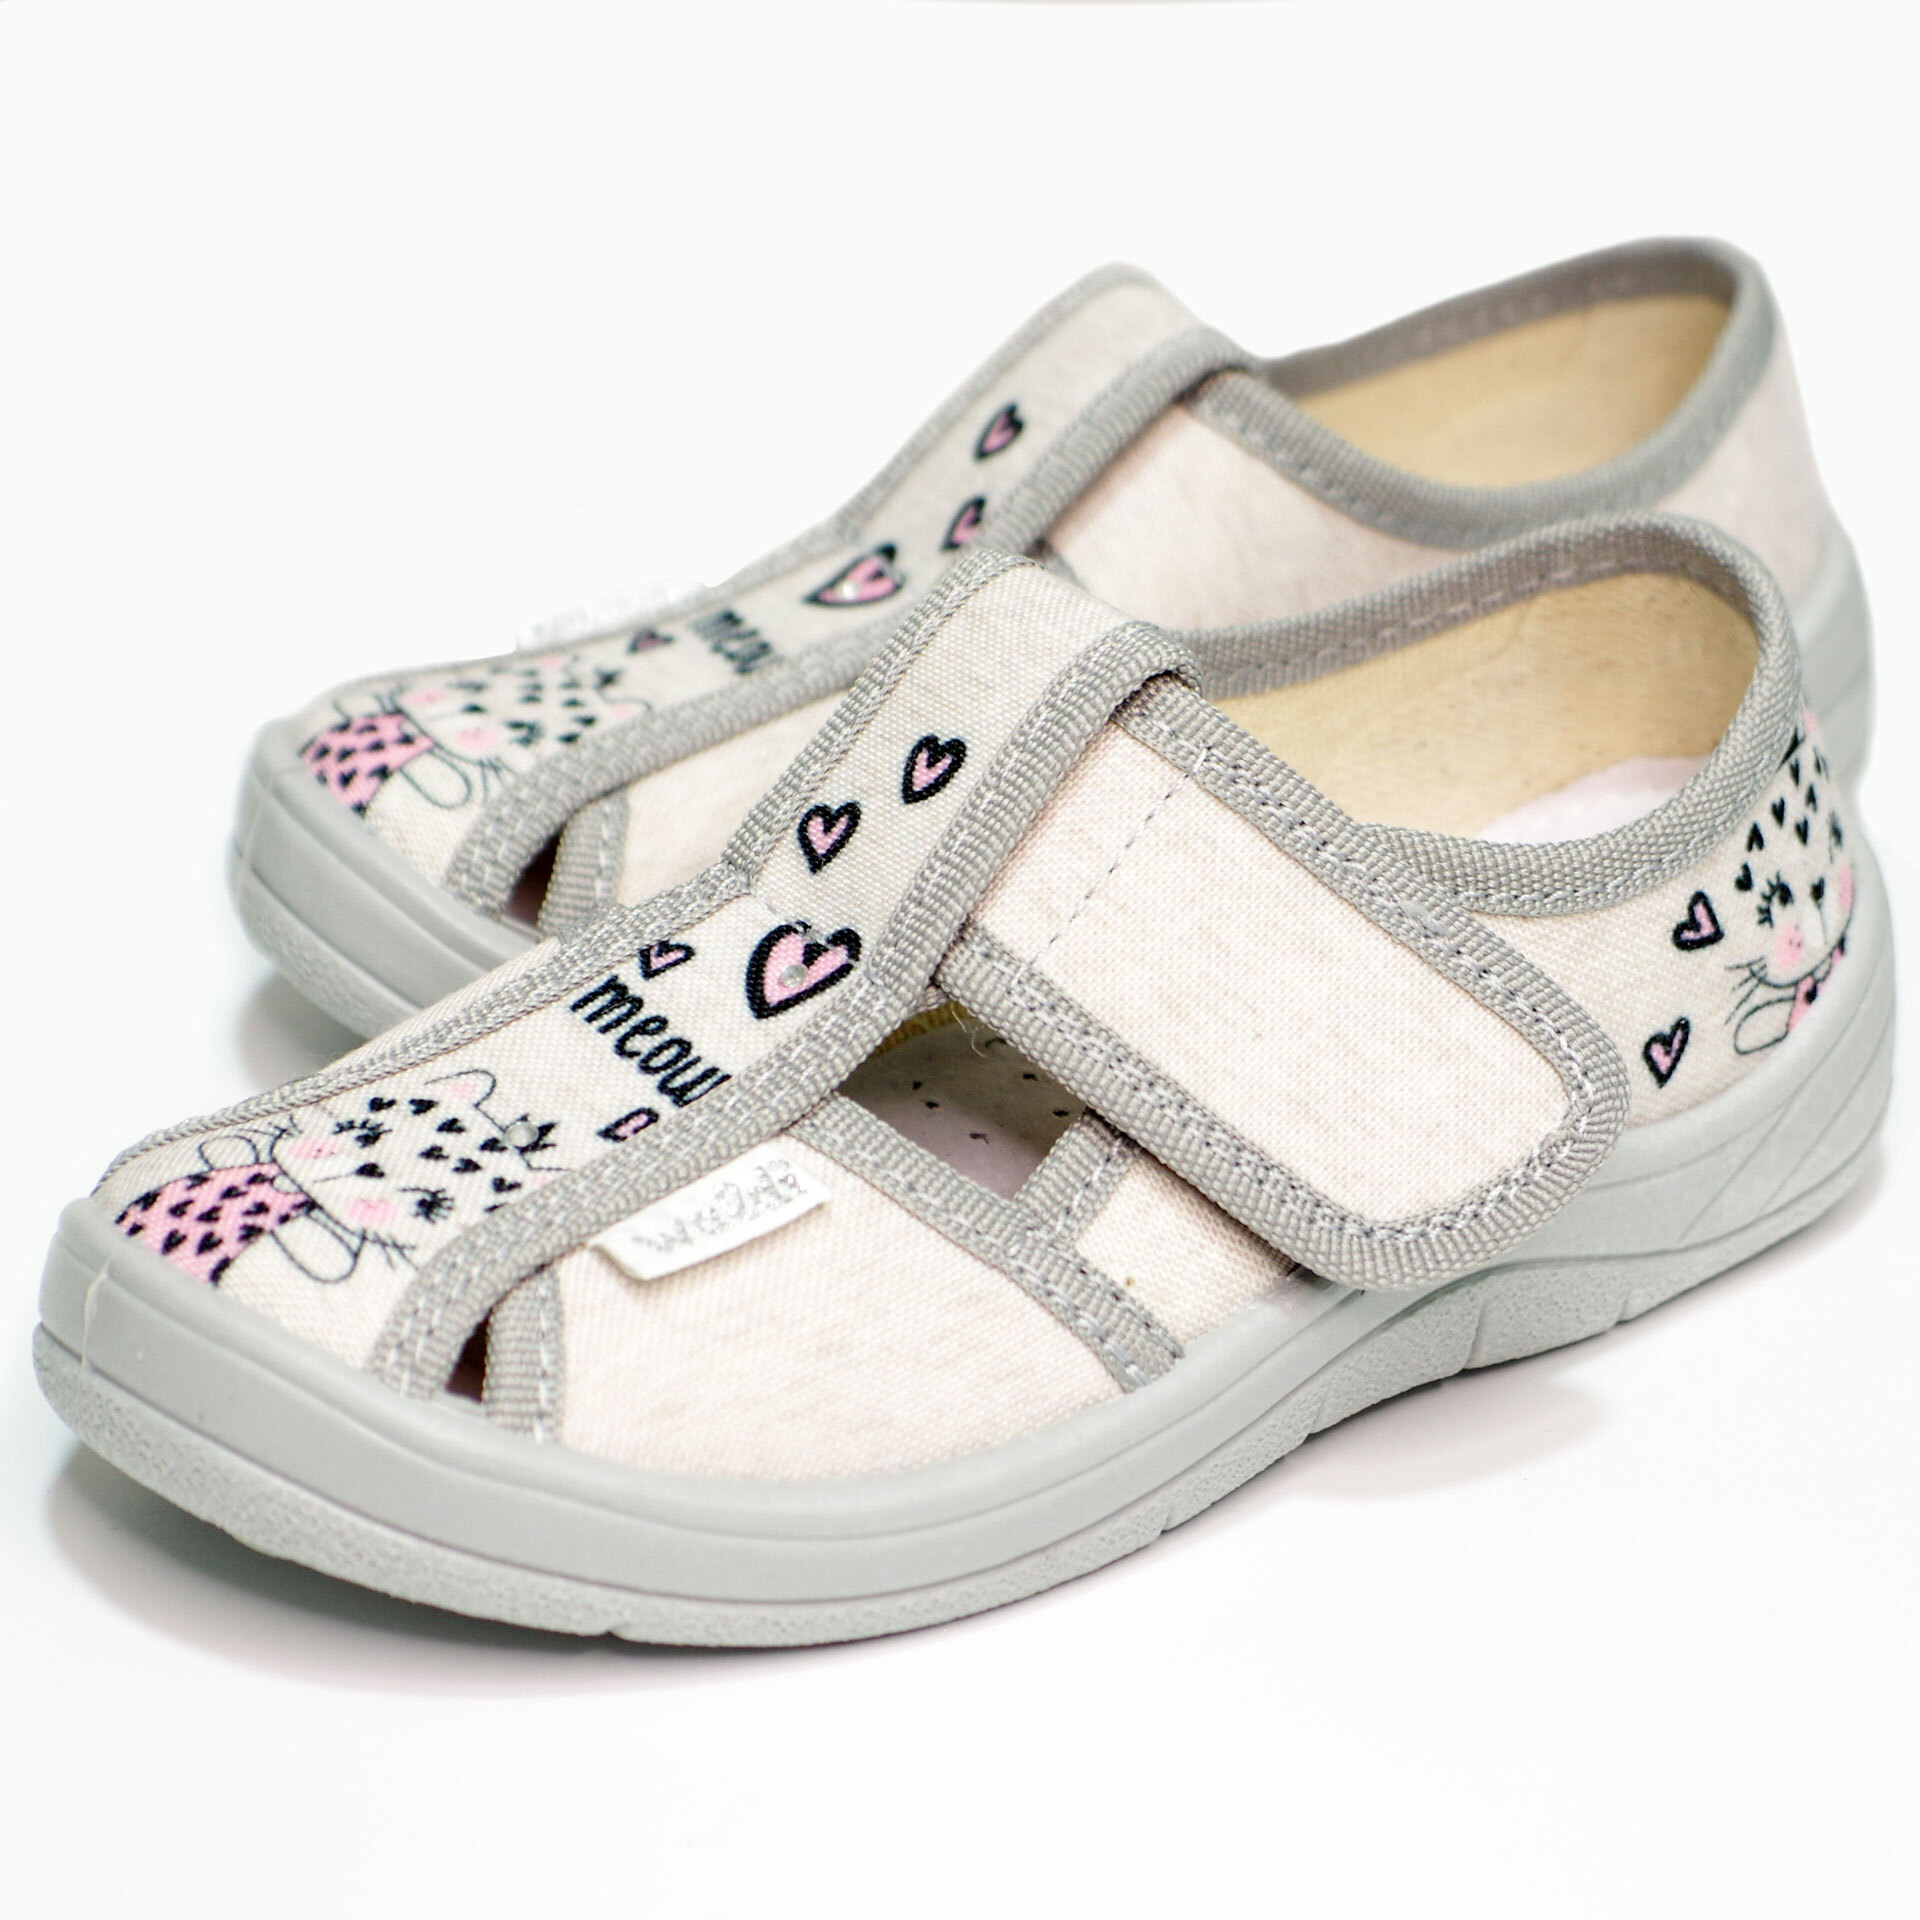 Текстильная обувь для девочек Тапочки Маша (2203) цвет Серый 24-30 размеры – Sole Kids. Фото 2